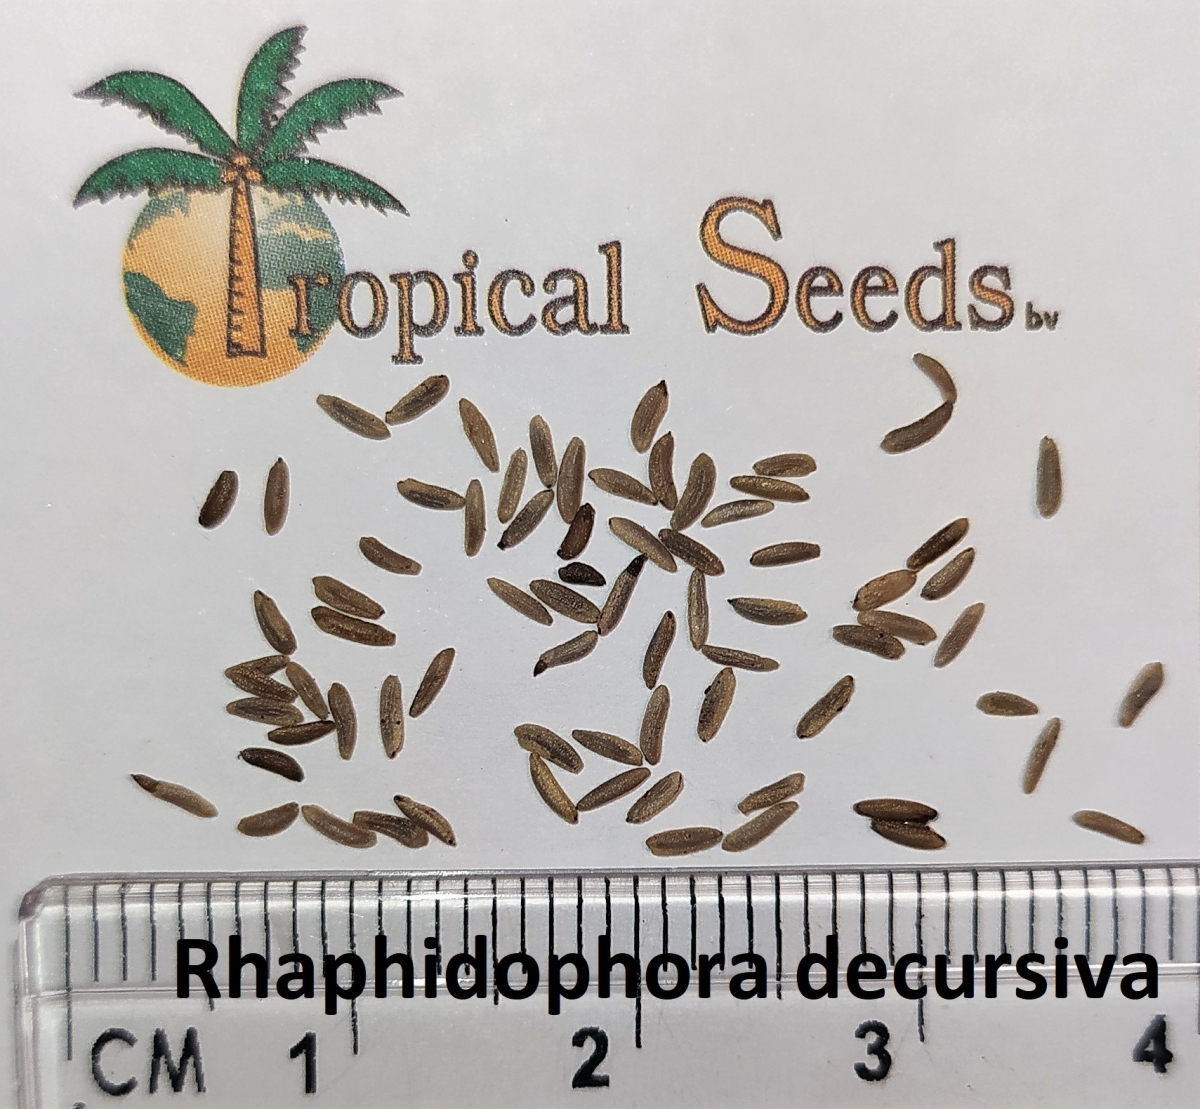 Rhaphidophora decursiva Seeds